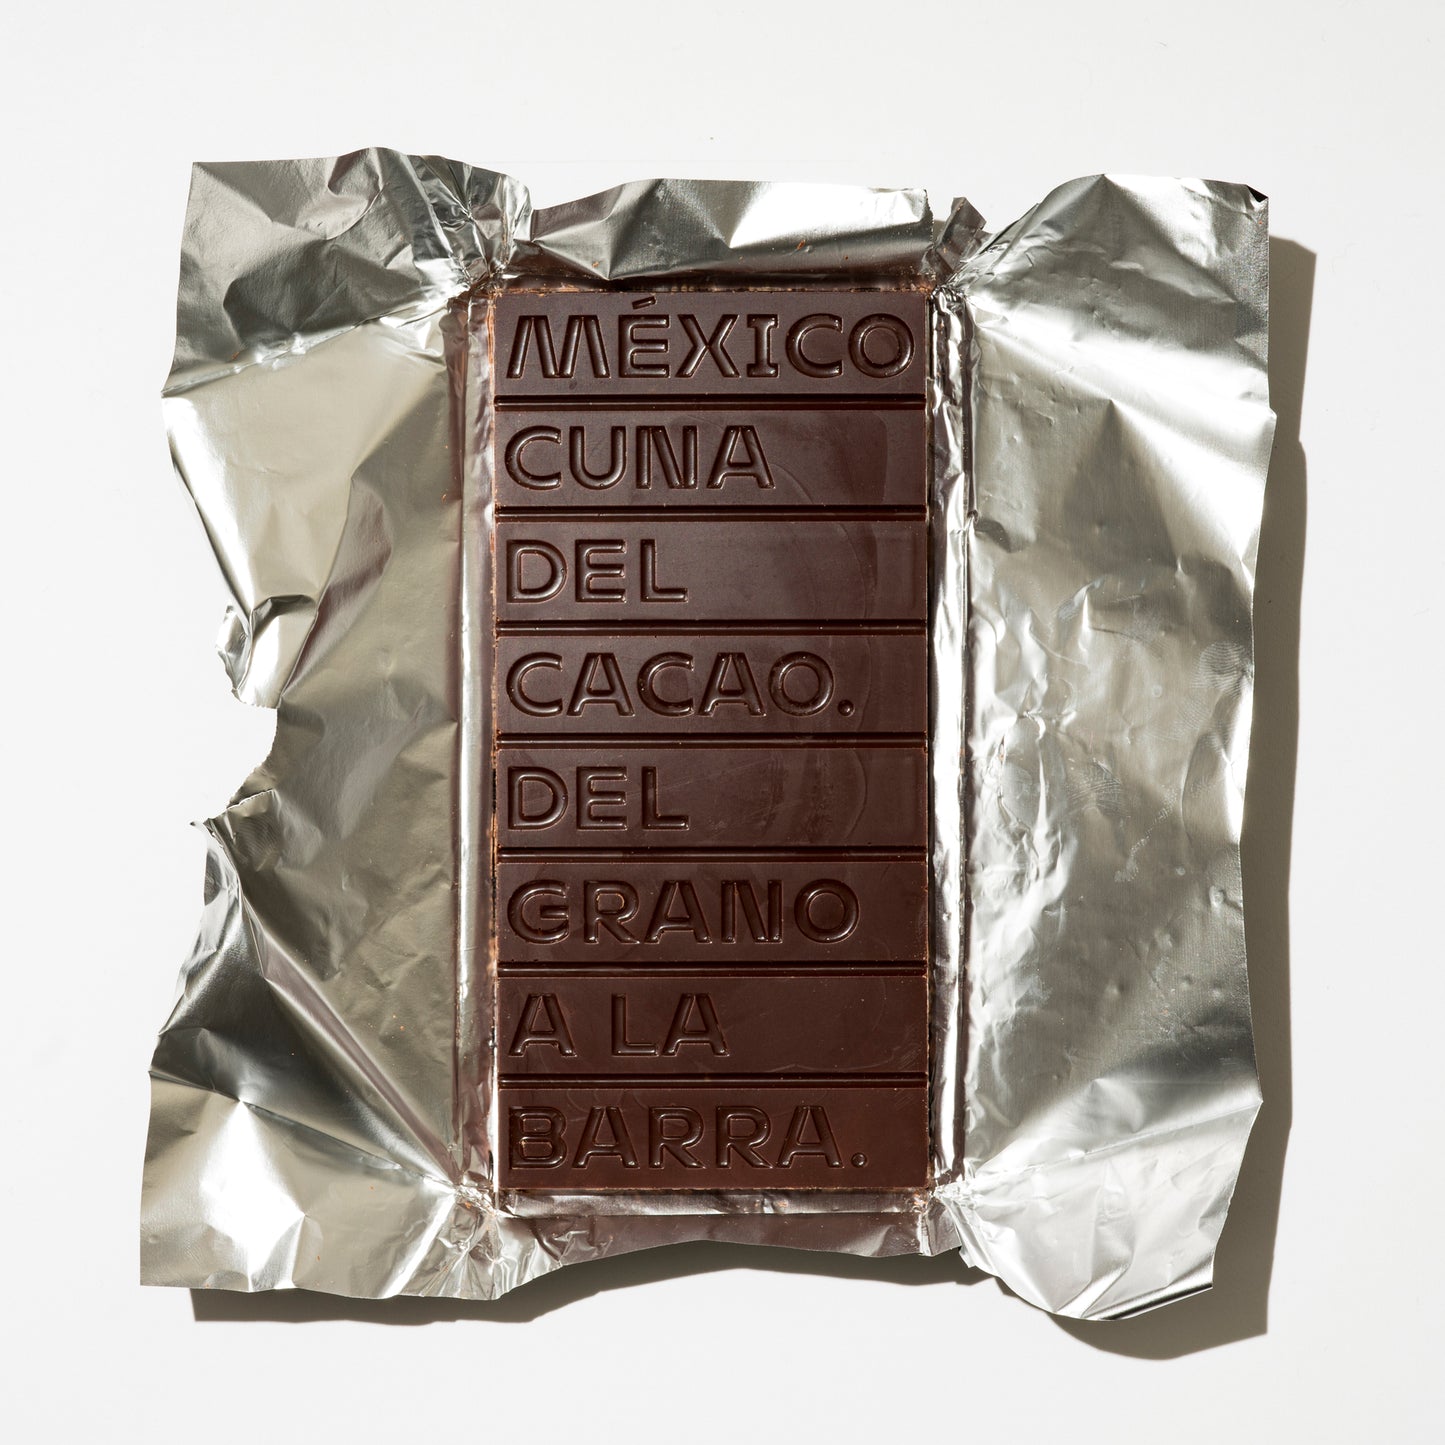 73% Cacao de Comalcalco con SAL DE MANANTIAL